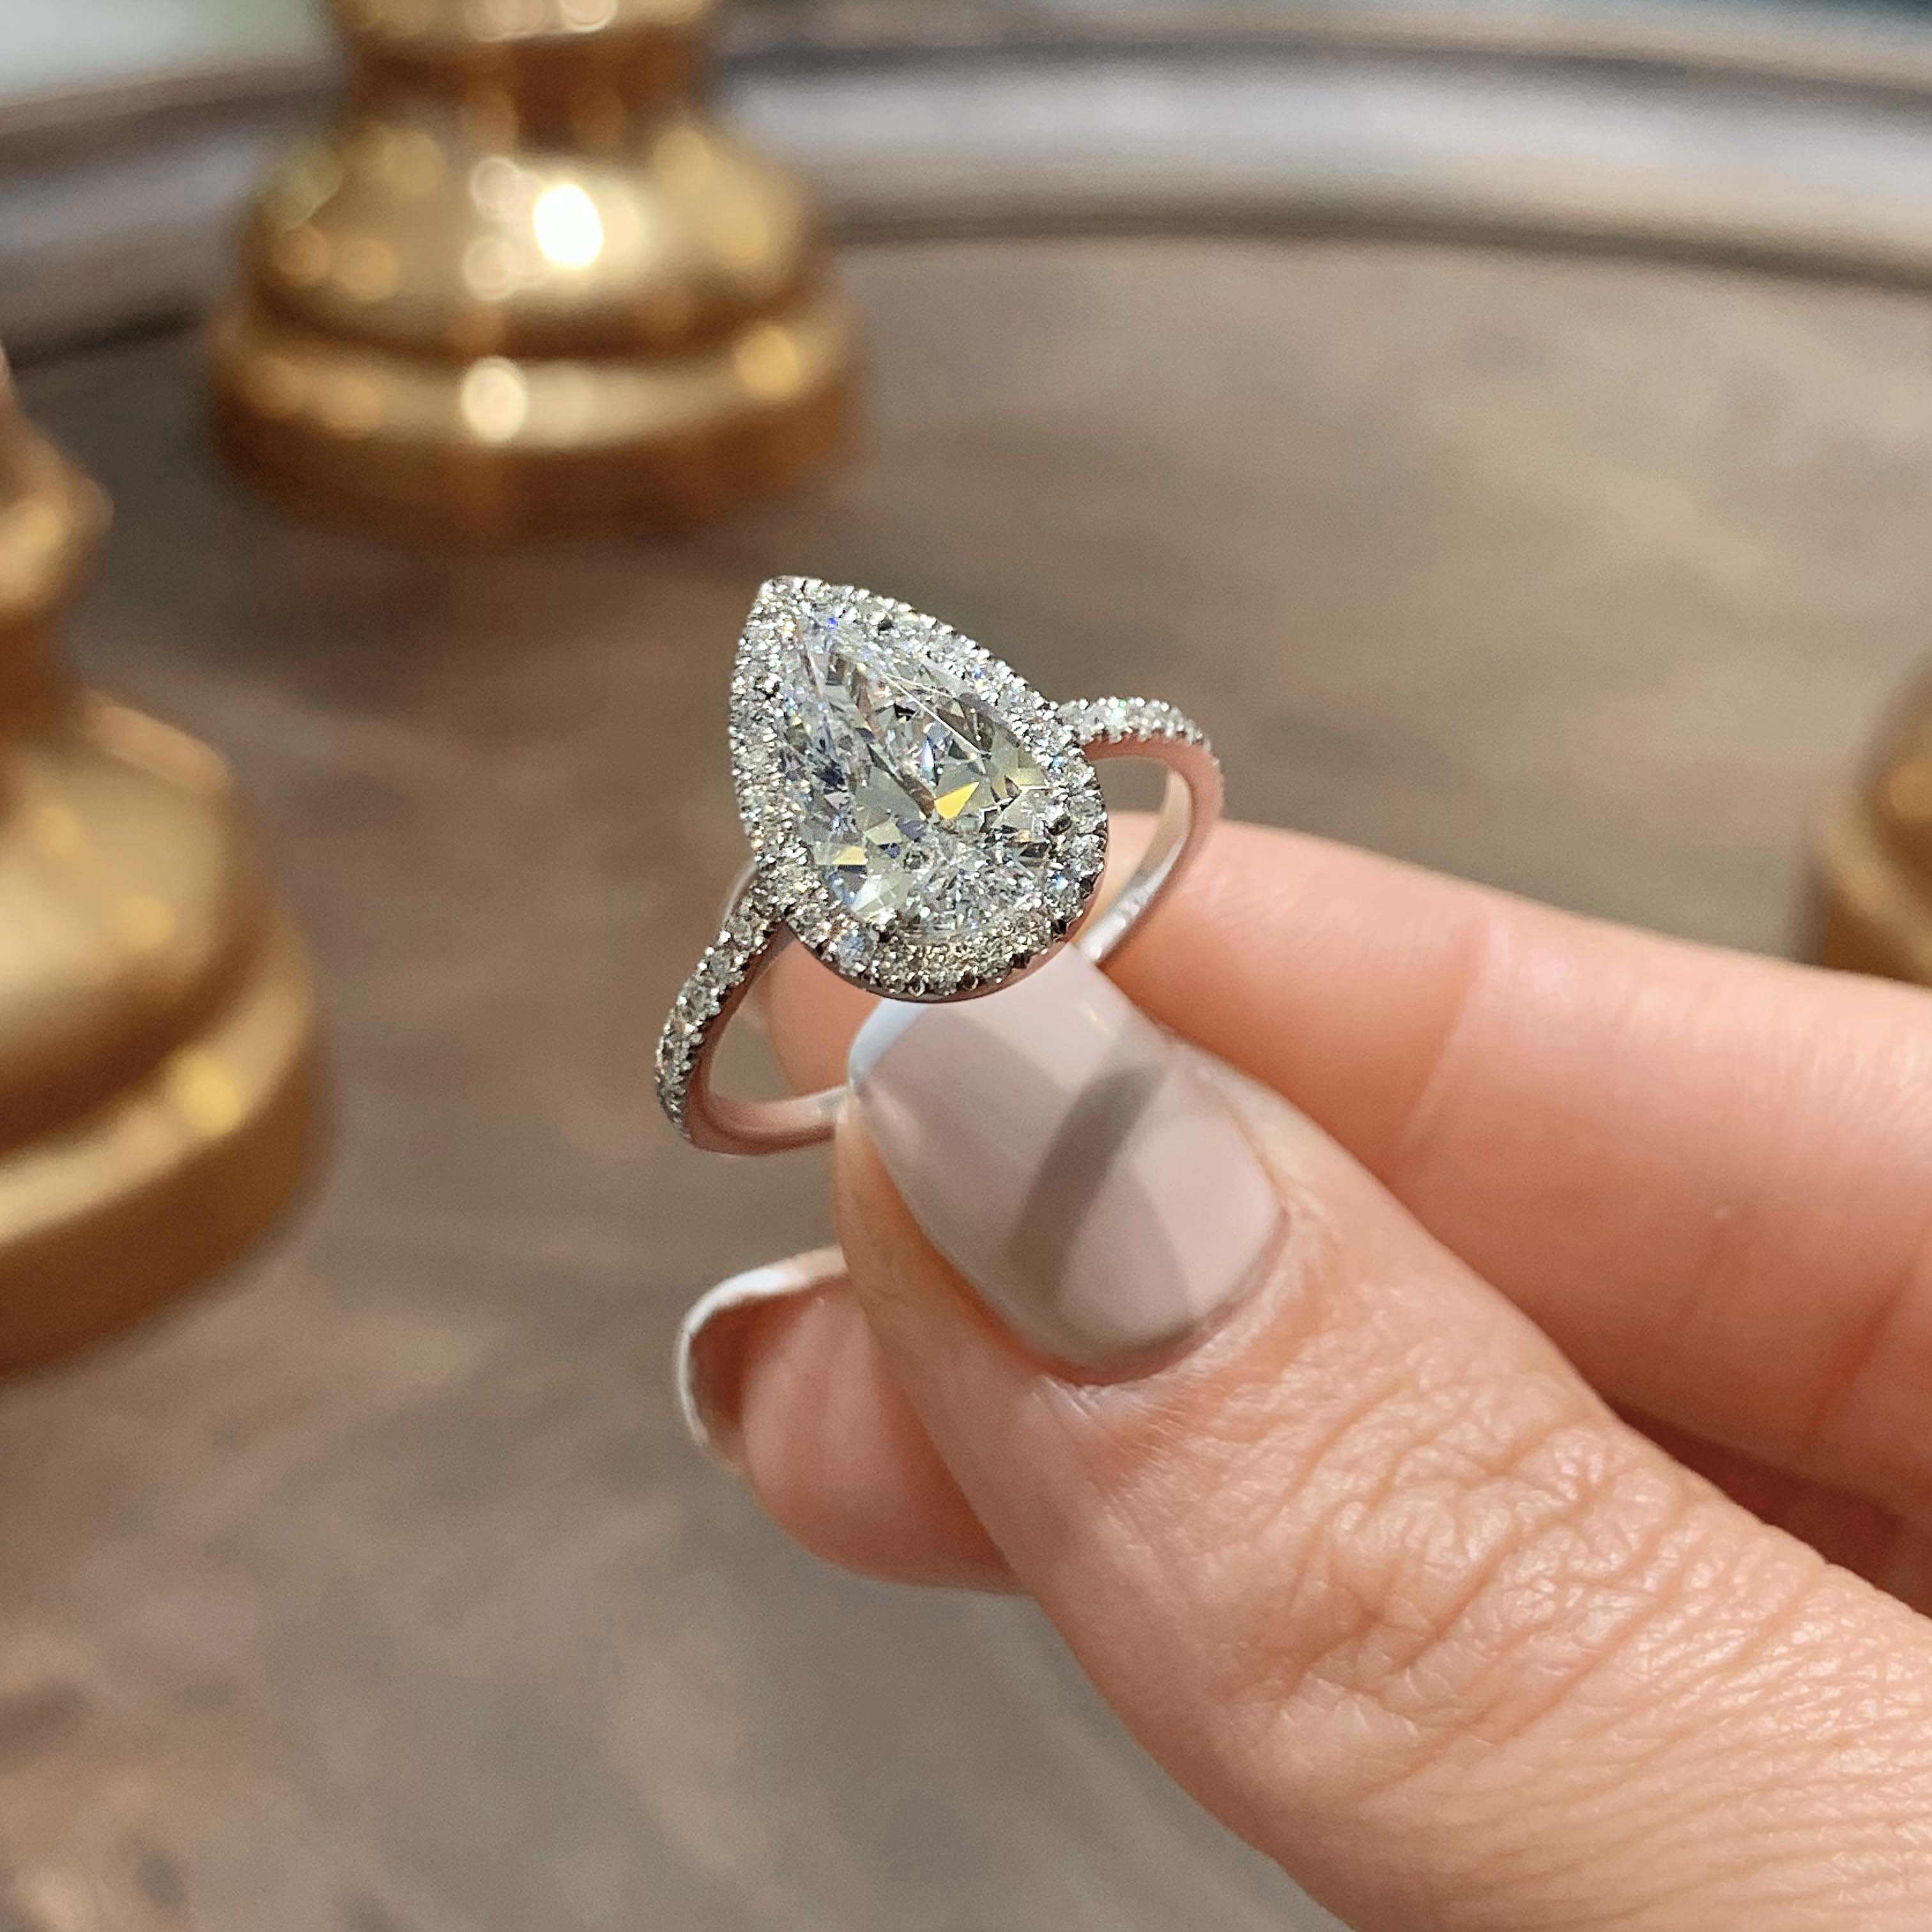 Sophia Lab Grown Diamond Ring (2.5 Carat) -14k White Gold